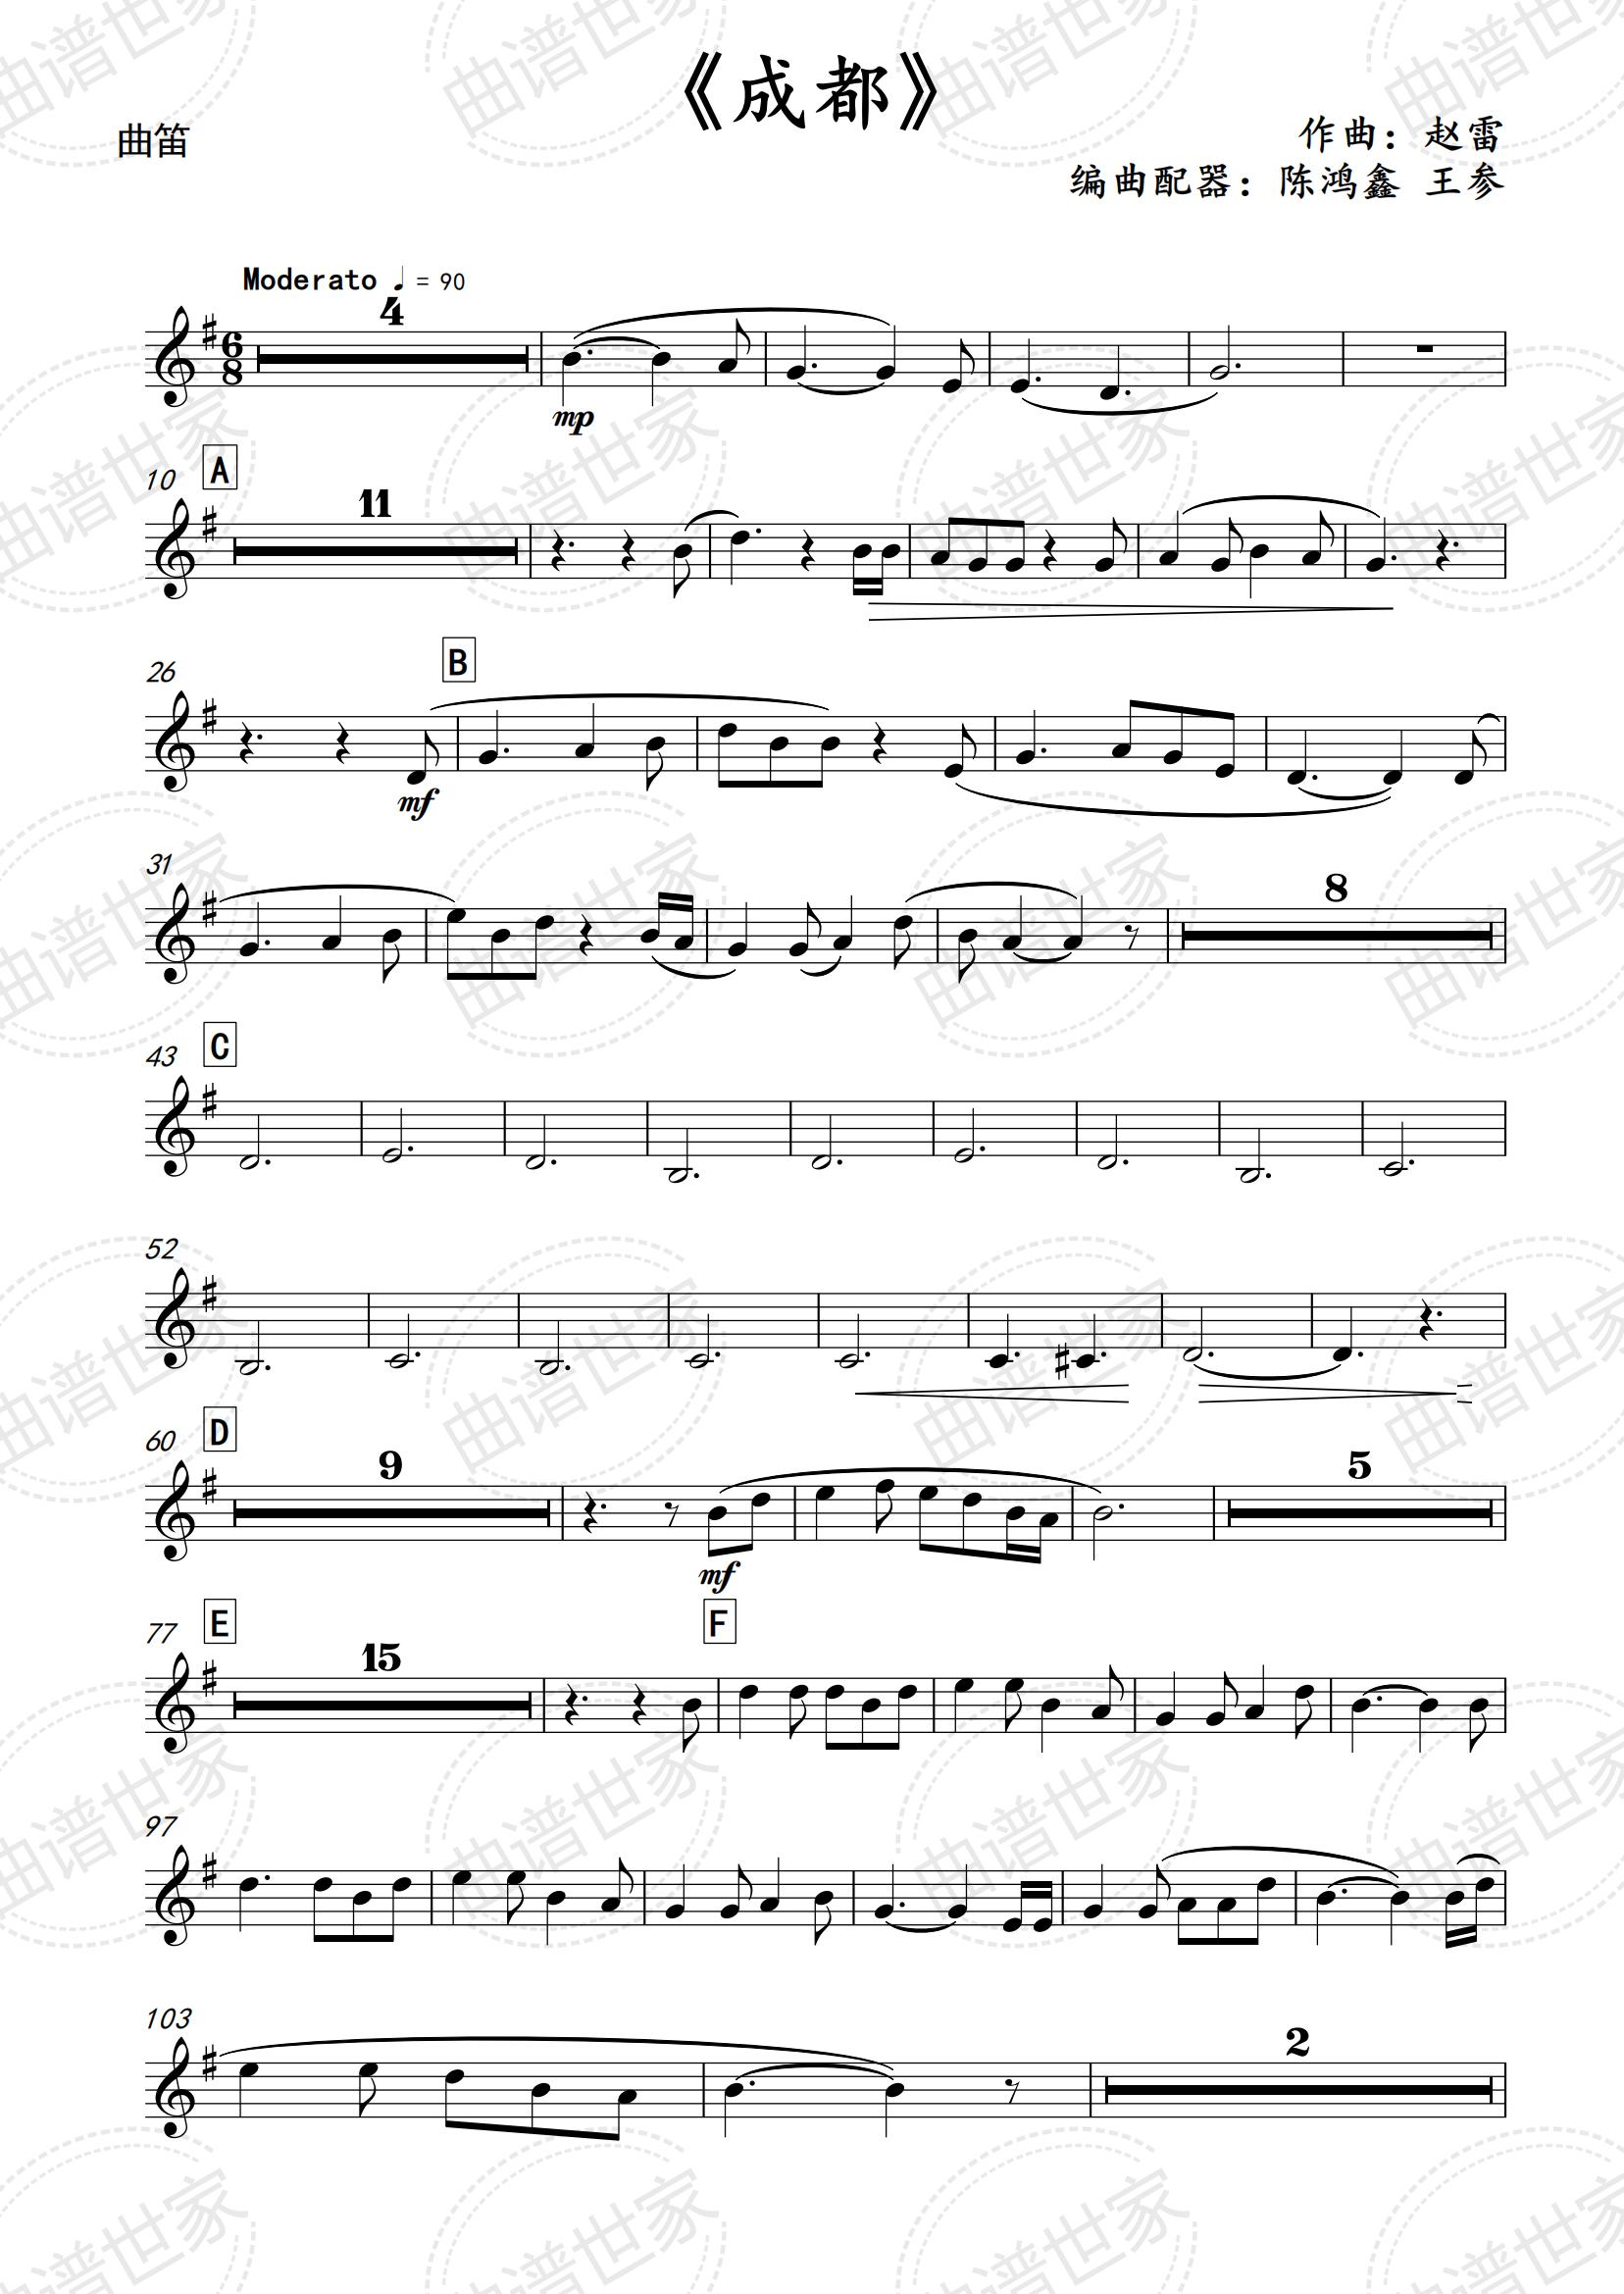 成都 民族管弦乐 总分谱 简谱 五线谱可选民乐合奏作品总谱+分谱 - 图2